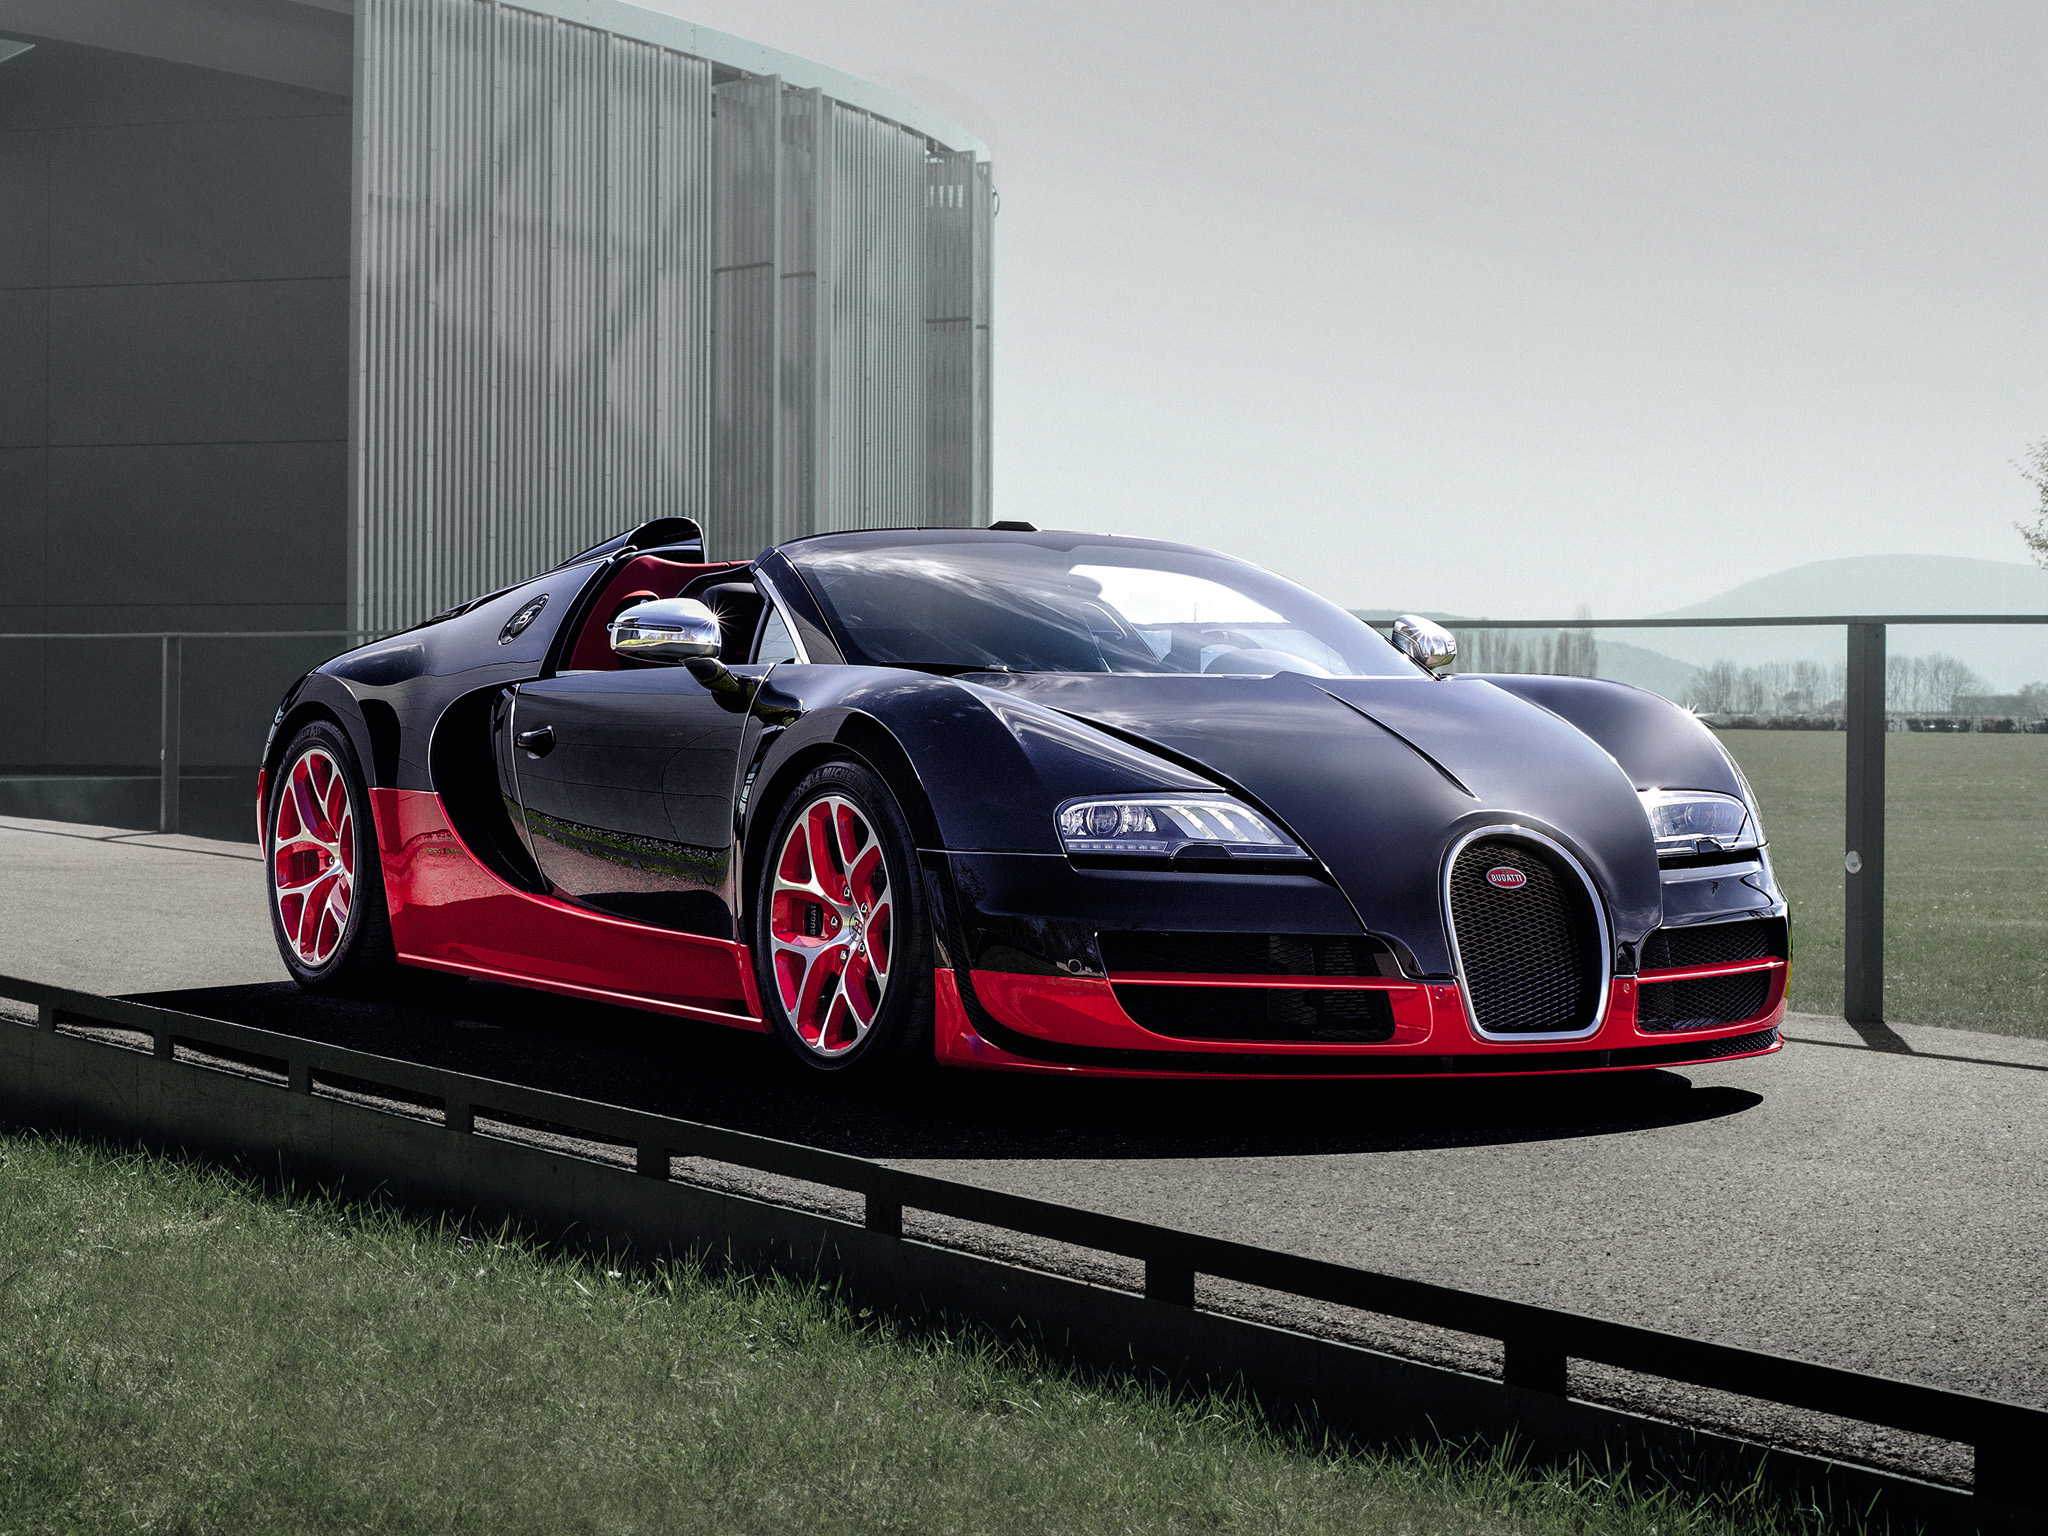 Descarga gratuita de fondo de pantalla para móvil de Bugatti, Bugatti Veyron, Vehículos.